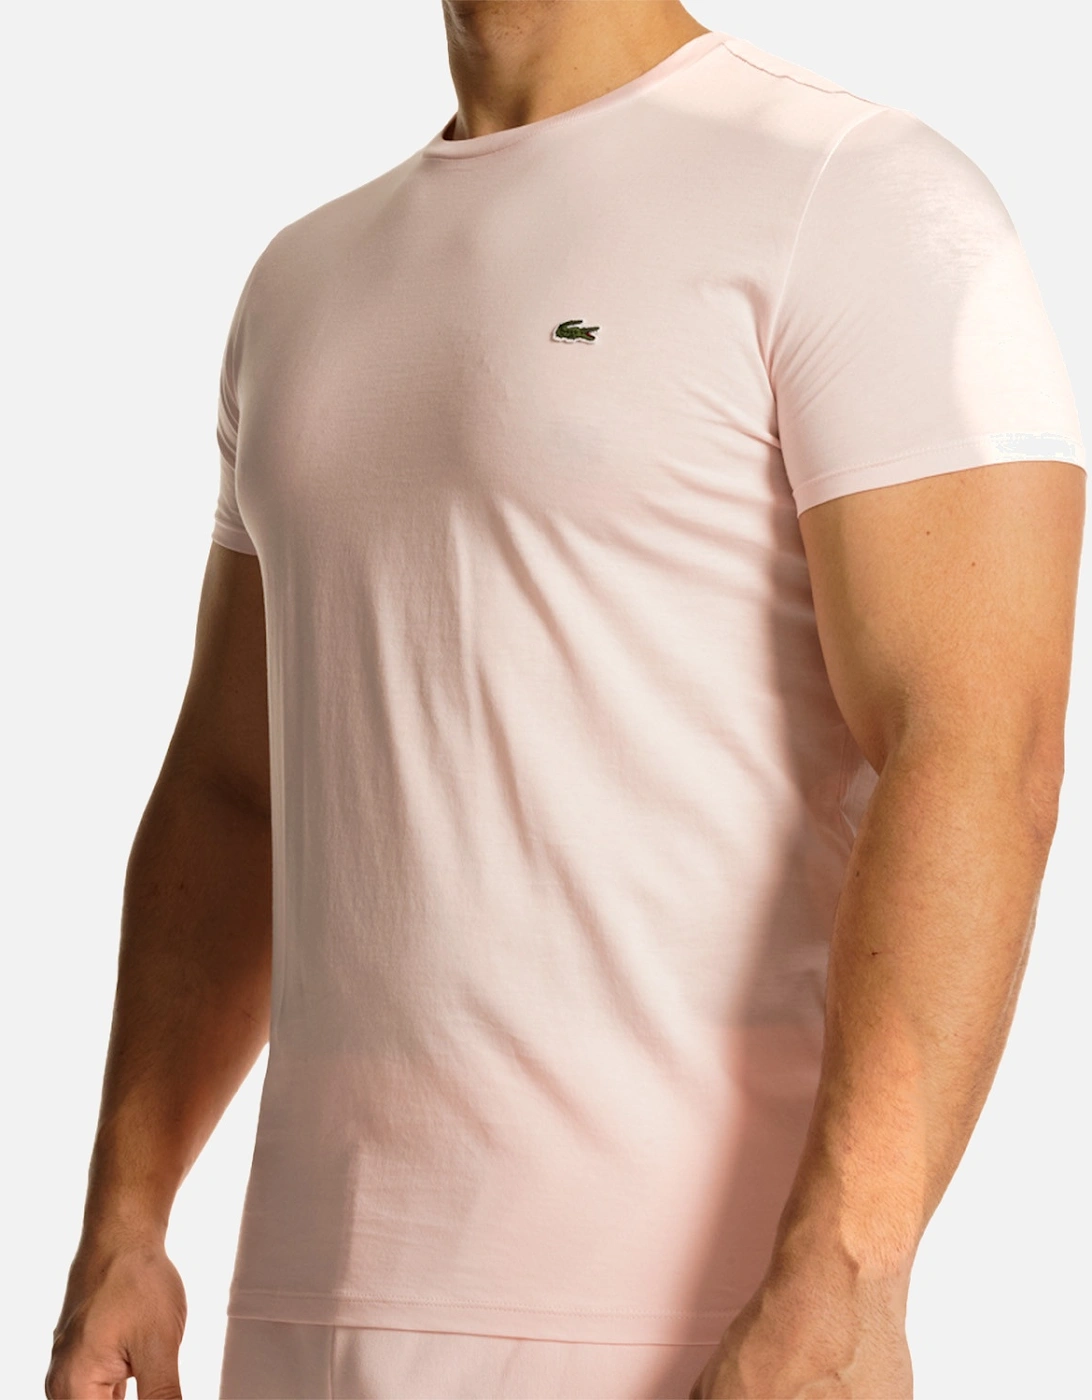 Mens Plain Crew T-Shirt (Light Pink)